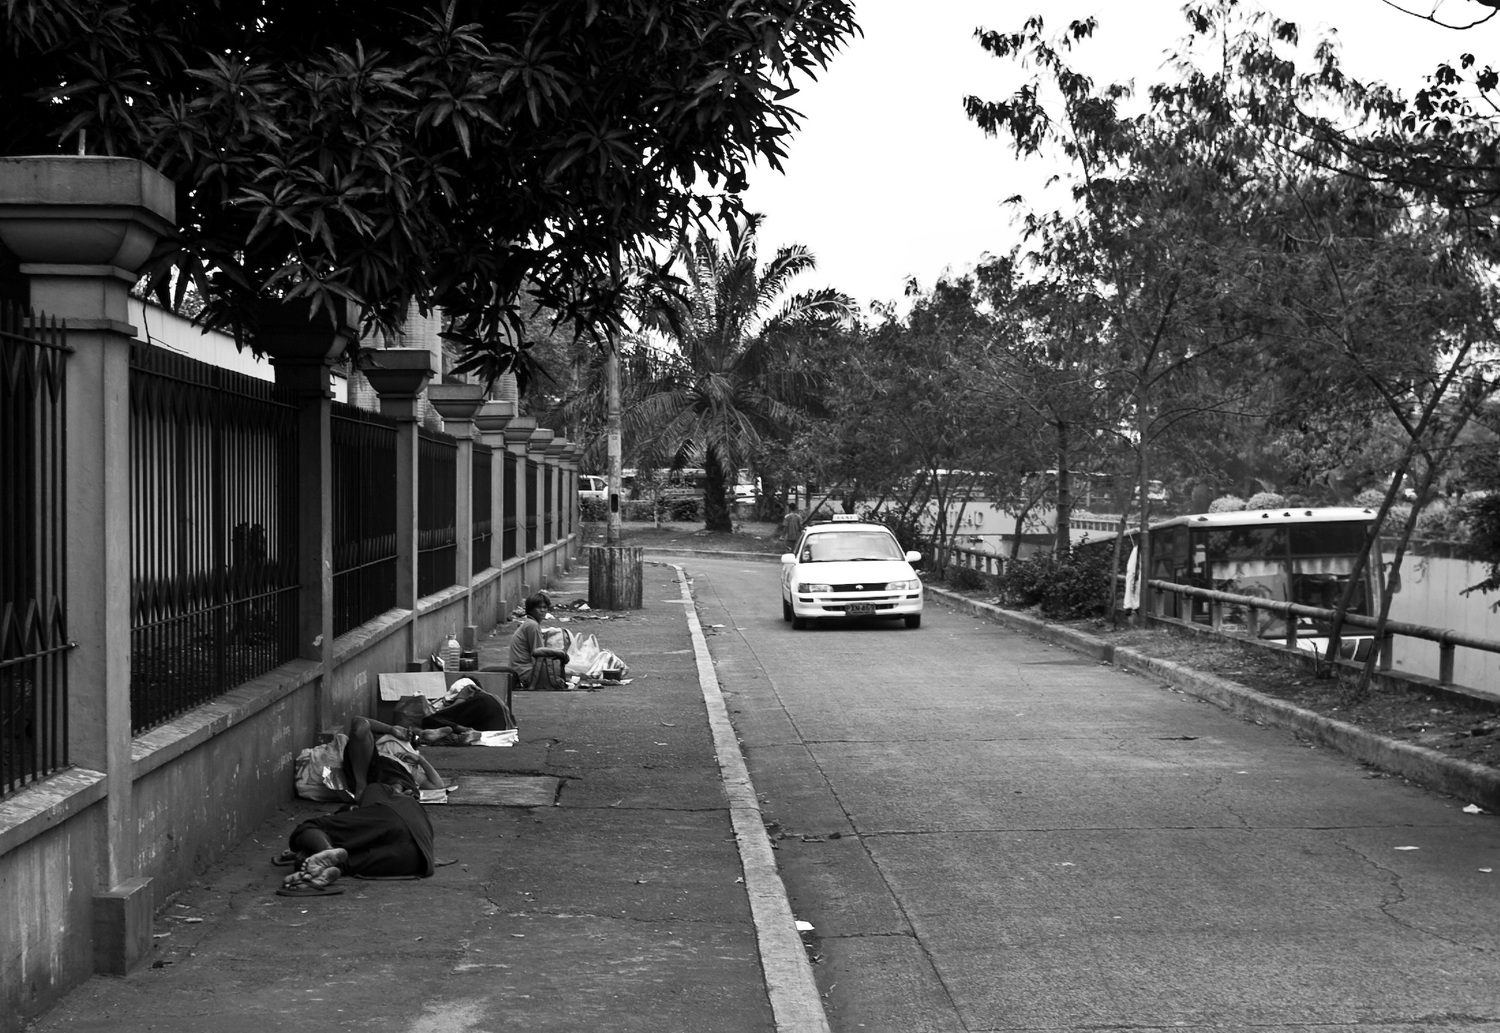 Манила, на улице. Народ спит и живет на этих картонках.